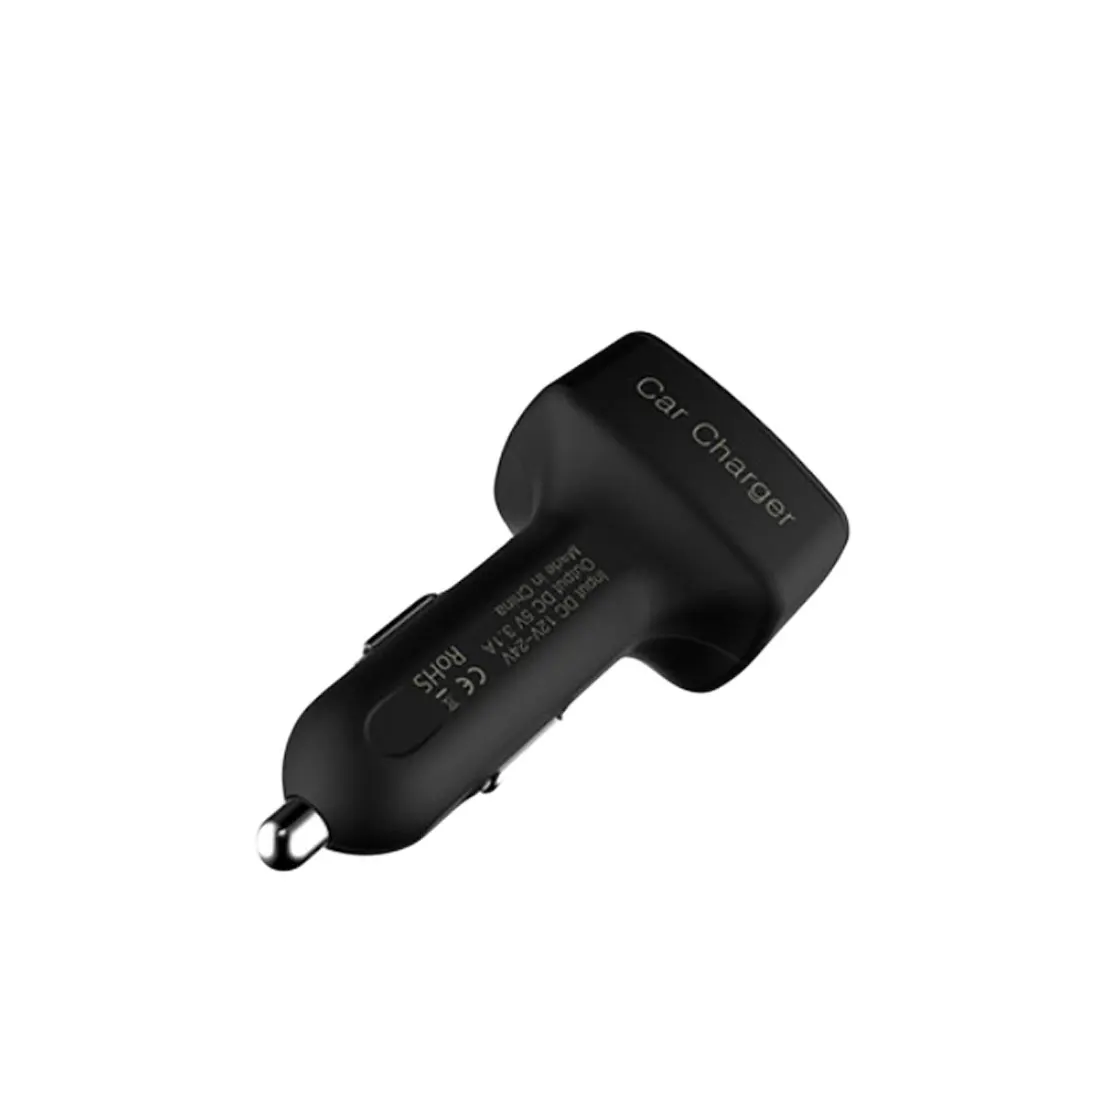 Dewtreetali горячая распродажа 4 в 1 Автомобильное зарядное устройство двойной USB Вольтметр термометр цифровой дисплей зарядка прикуриватель автомобильный Стайлинг